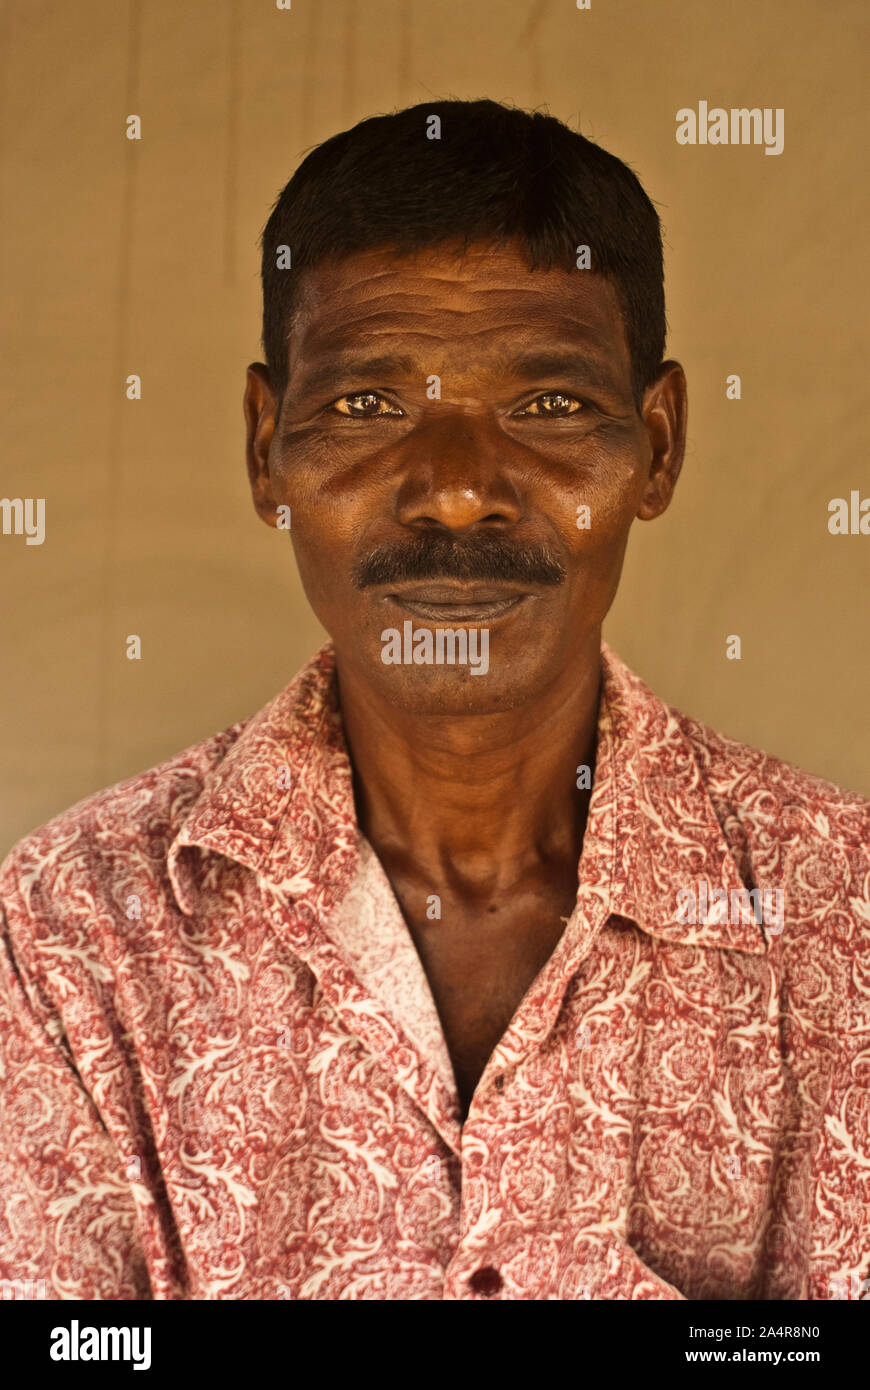 Un portrait d'un homme de la communauté, en Joypurhat Santal, Rajshahi,  Bangladesh. Le 20 mai 2011..les Santals sont une minorité ethnique vivant  dans différents districts de la division de Rajshahi au Bangladesh.